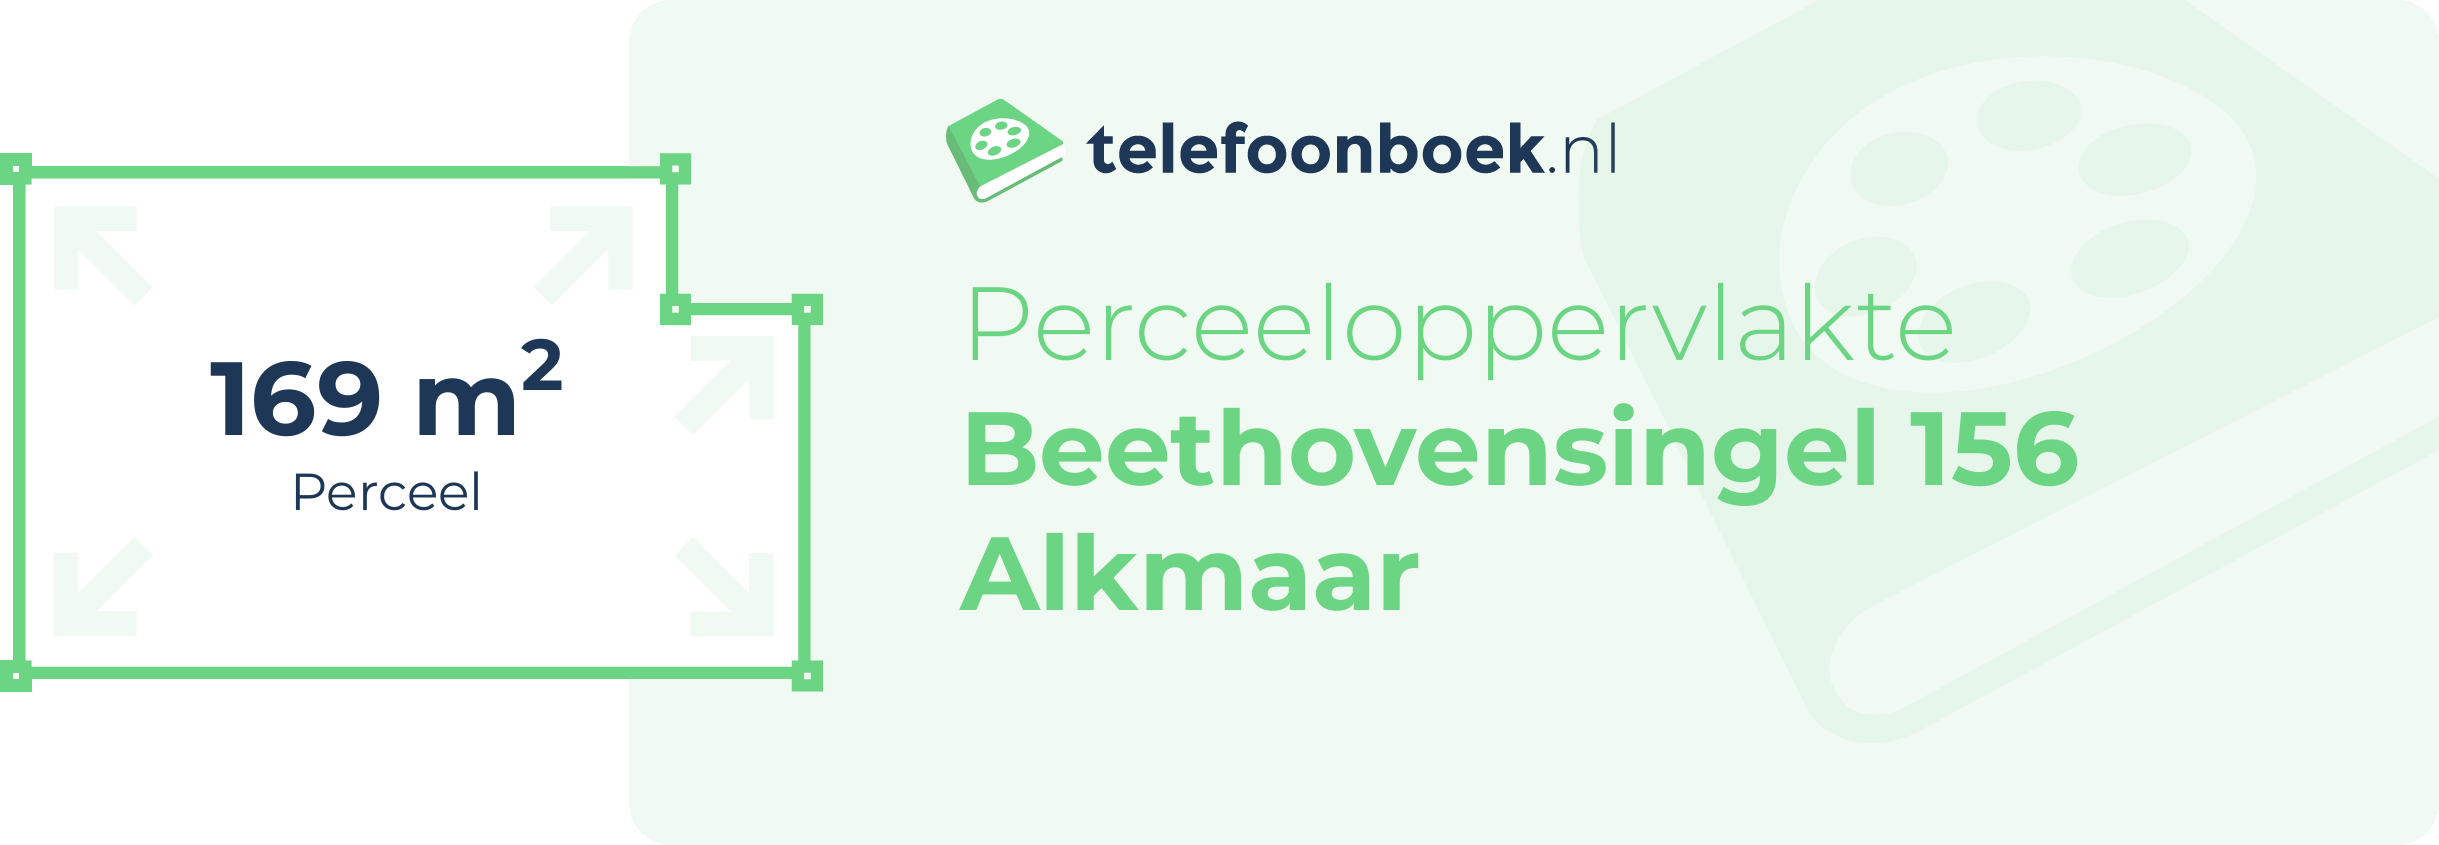 Perceeloppervlakte Beethovensingel 156 Alkmaar